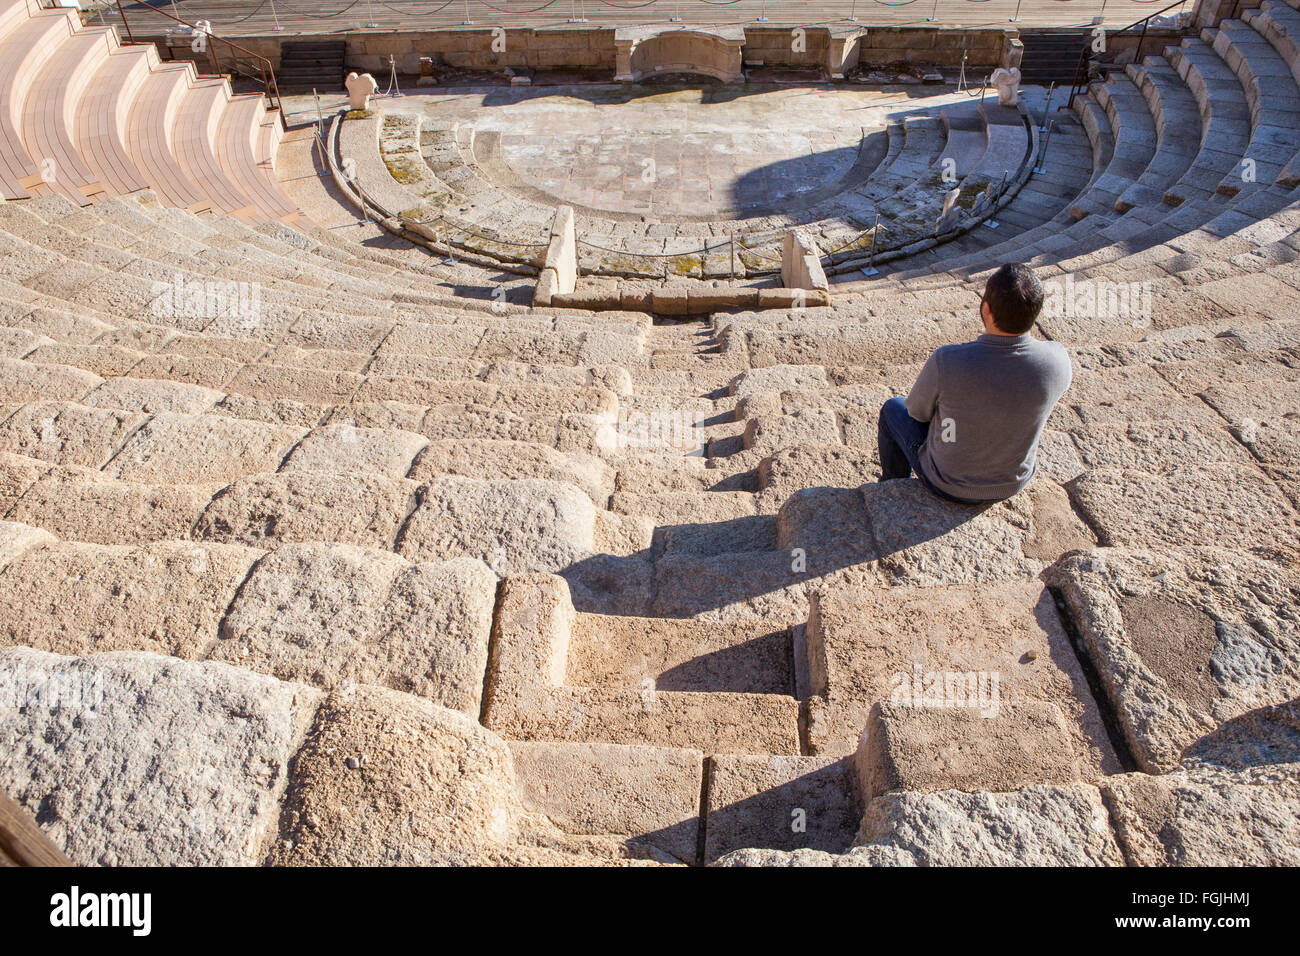 Turisti in visita al teatro romano di Medellin, Spagna. Egli è seduto sul grandstand godendo di una magnifica vista Foto Stock